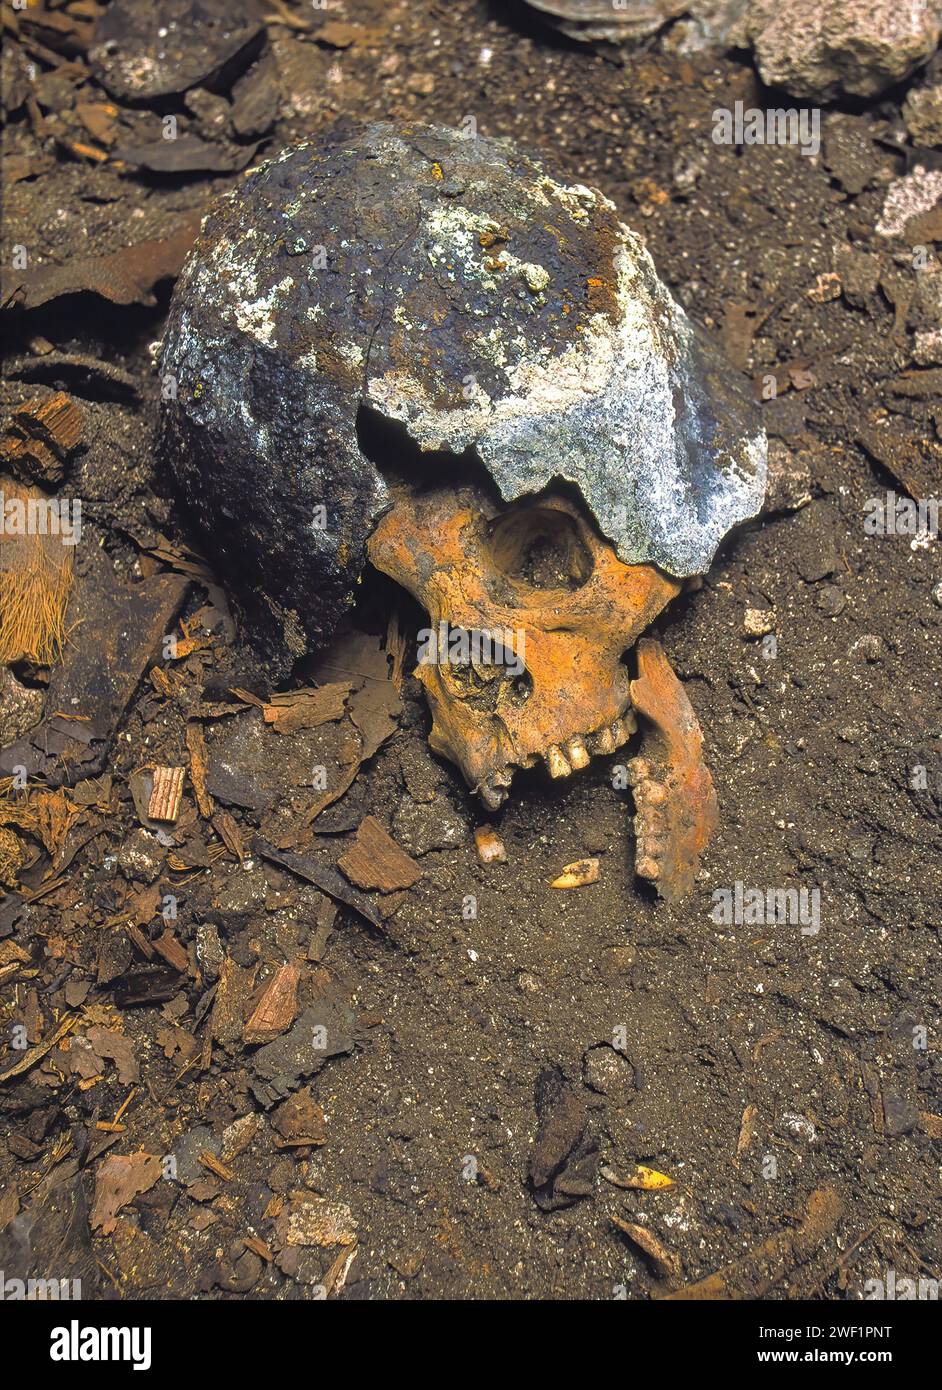 Schädel des japanischen Soldaten aus dem 2. Weltkrieg, der noch Helm trägt, wurde in einer Höhle getötet. Schlacht von Peleliu 1944. Pazifikkrieg. Peleliu. Palau-Inseln Stockfoto